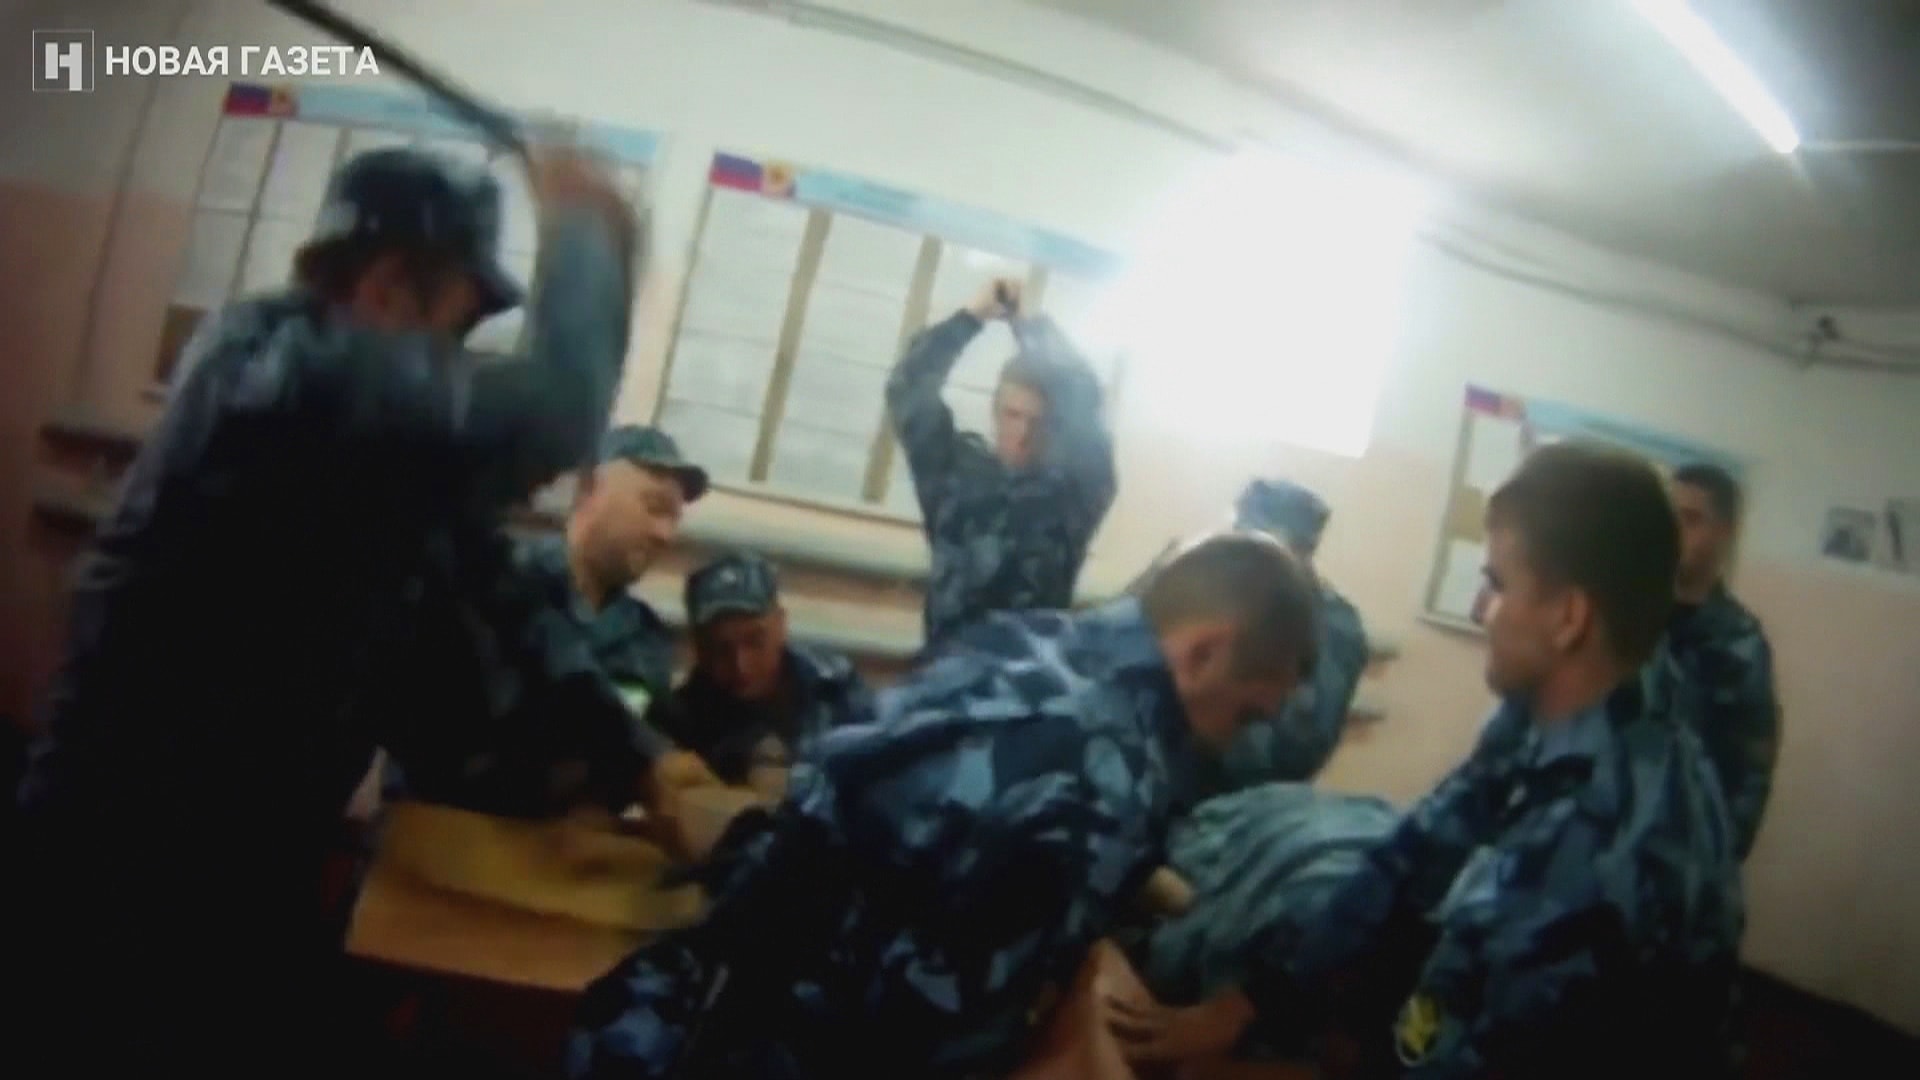 Videa zachytila, jak dozorci bijí vězně v trestanecké kolonii.